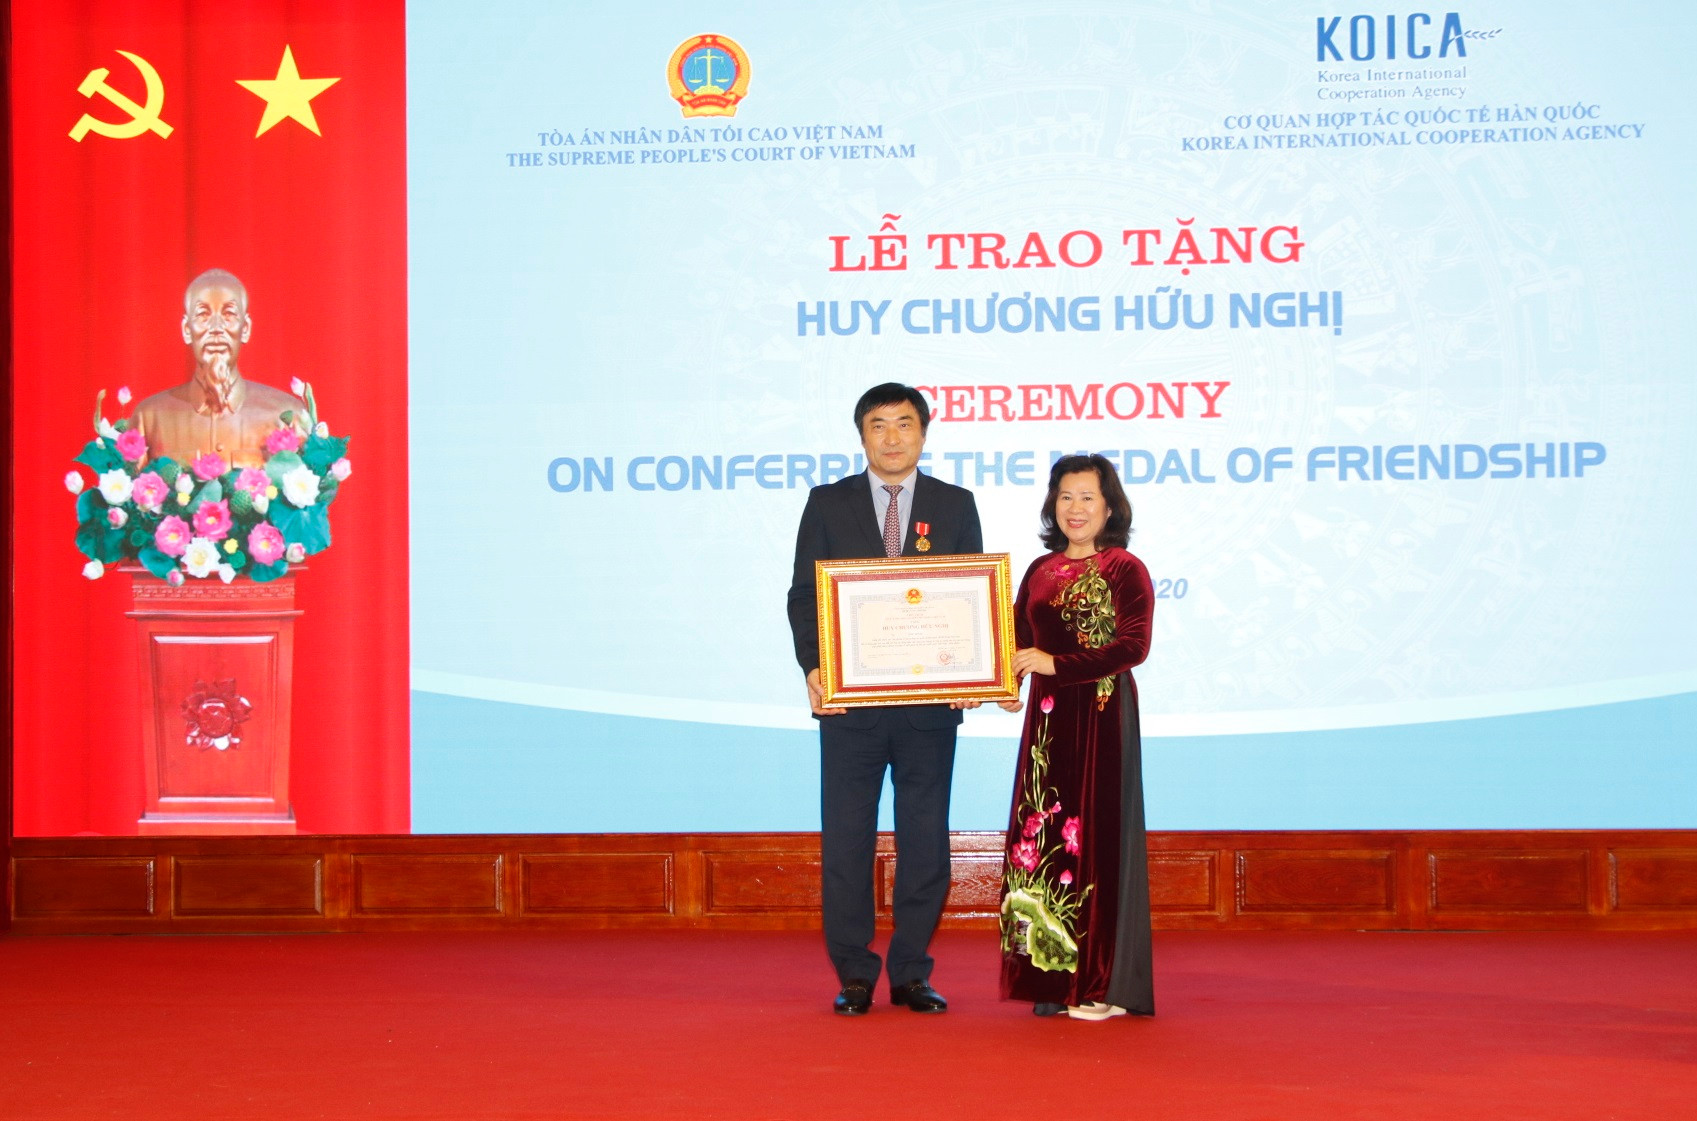 Trao tặng Huy chương Hữu nghị cho Giám đốc quốc gia KOICA tại Việt Nam